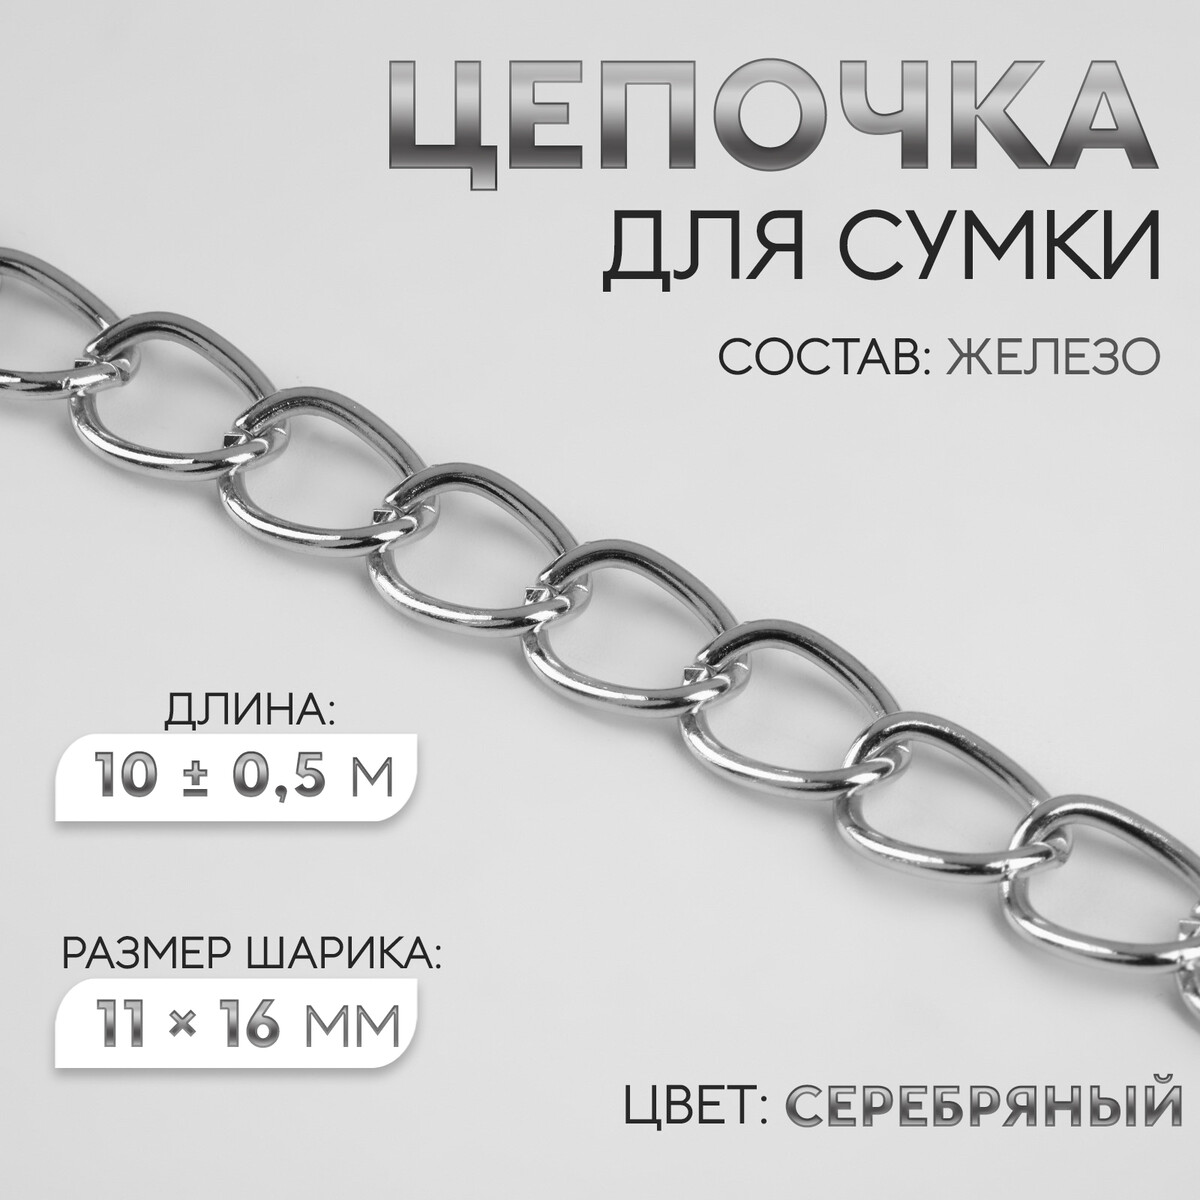 Цепочка для сумки, железная, 11 × 16 мм, 10 ± 0,5 м, цвет серебряный цепочка для сумки железная 7 × 11 мм 10 ± 0 5 м серебряный